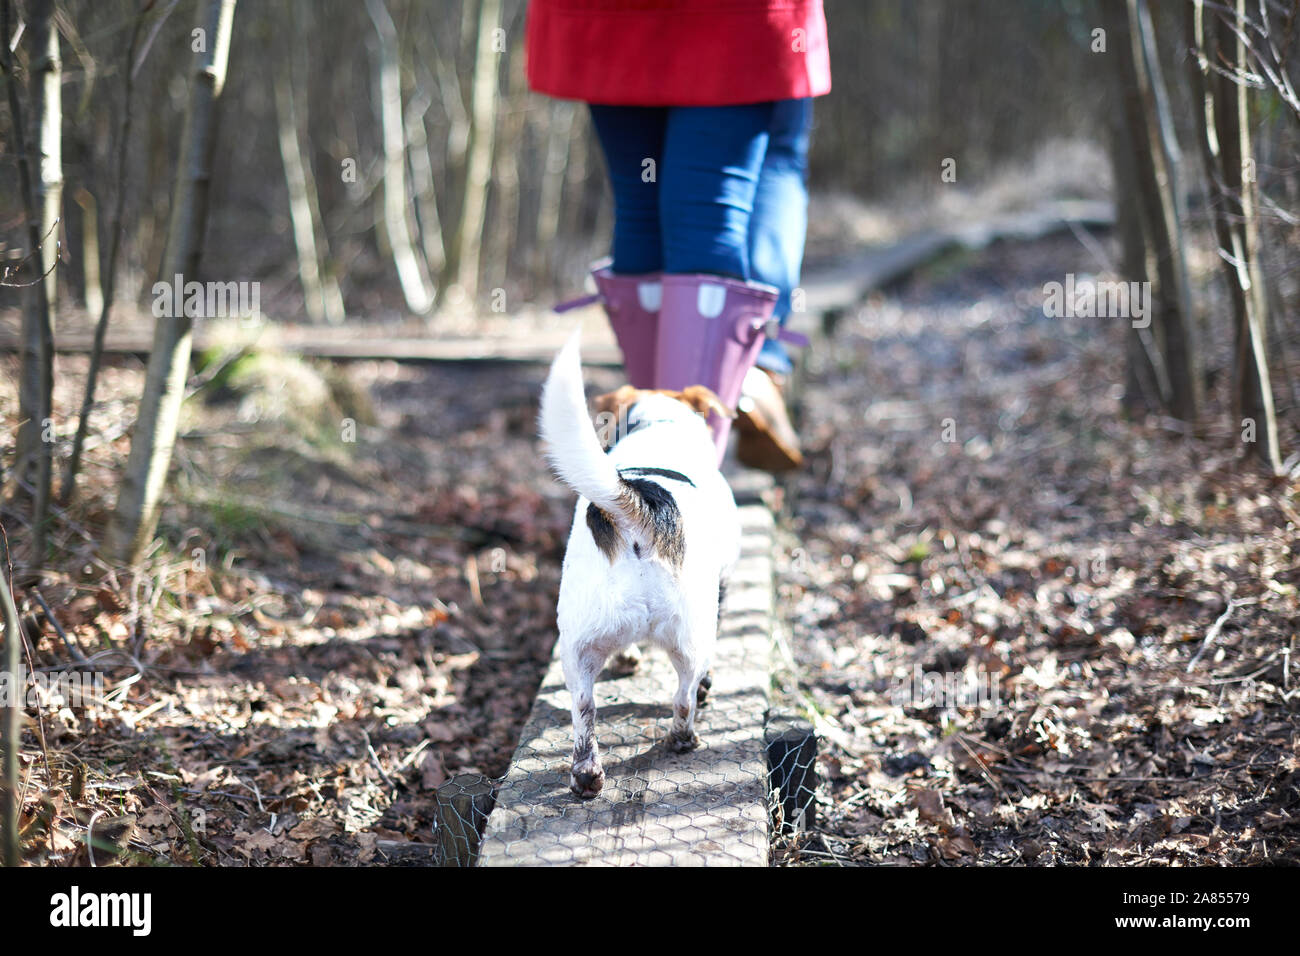 Süßer Hund folgende Besitzer Wandern auf der Plank im Herbst Wald Stockfoto